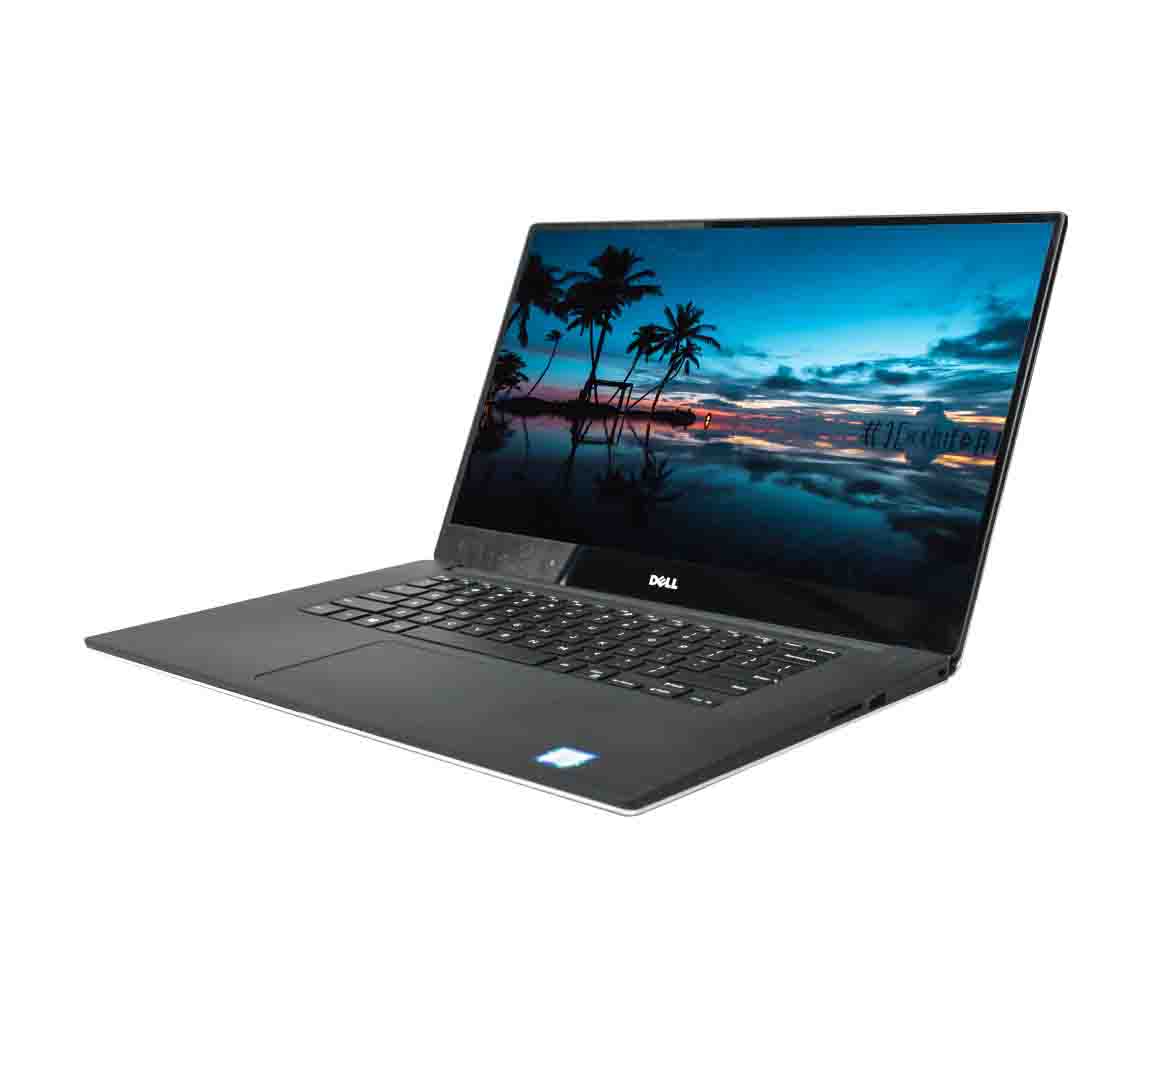 Dell Precision 5520, Intel Core i7-7th Gen CPU, 16GB , 1TB SSD, NVIDIA Quadro M1200 w/4GB, 15.6 inch Touchscreen, Win 10 Pro, Refurbished Laptop